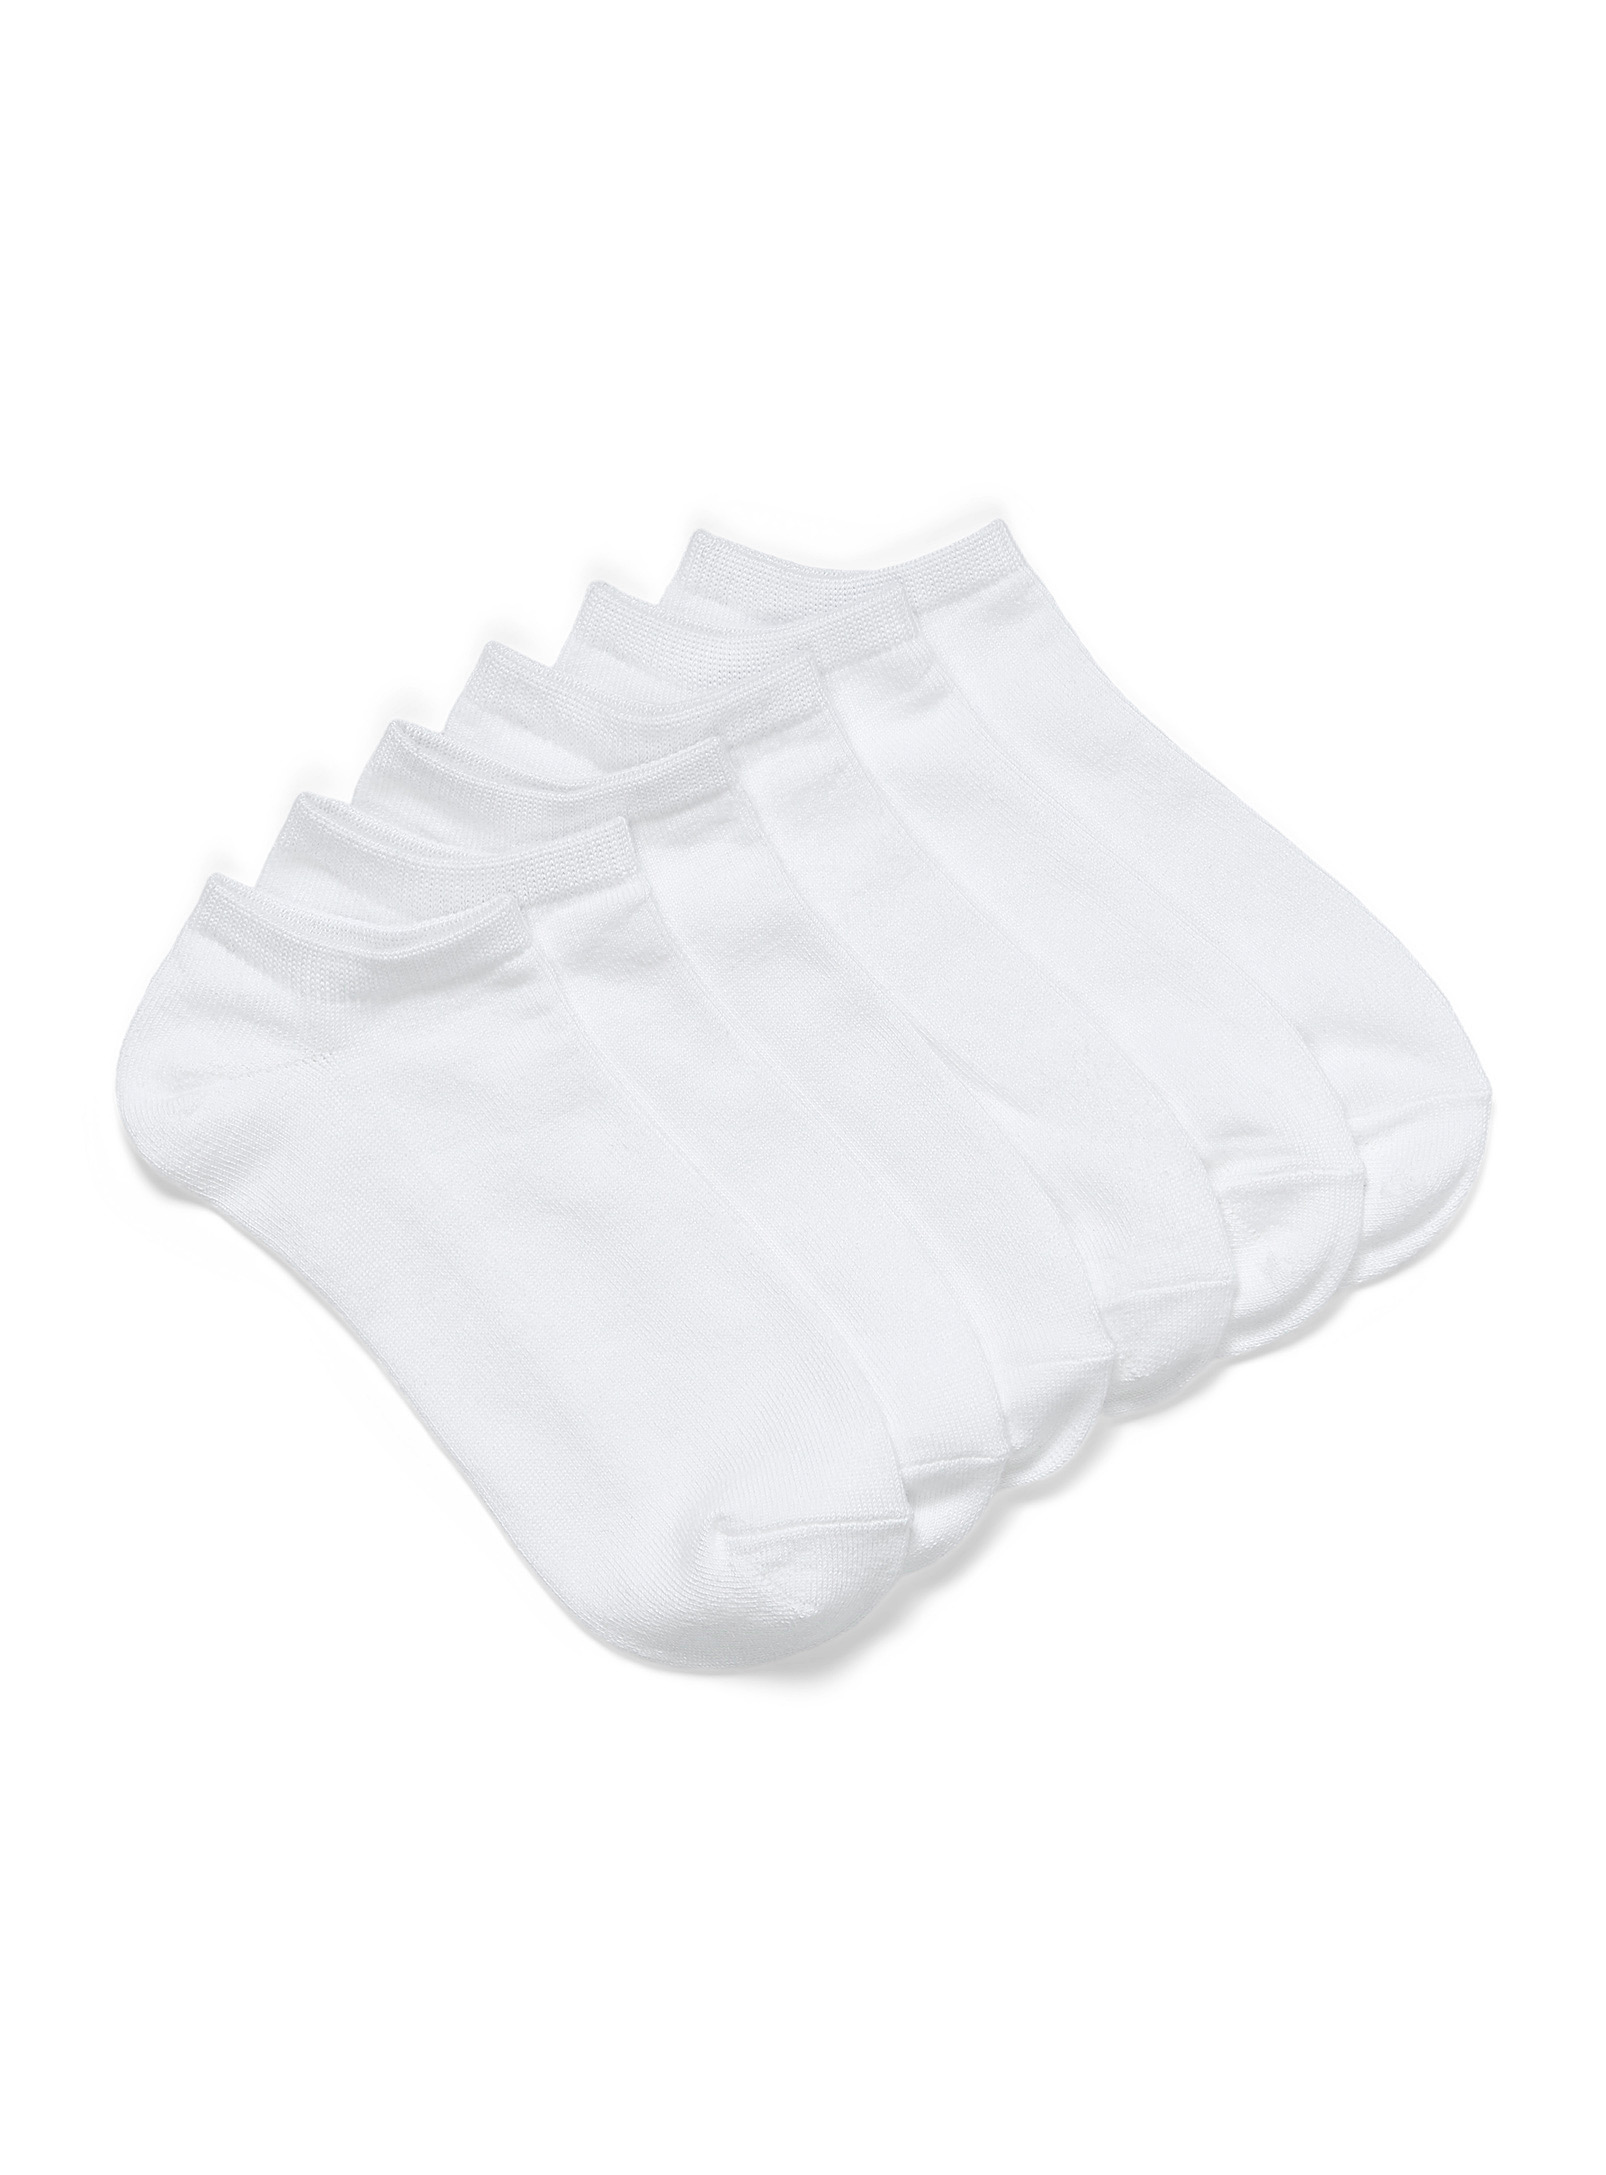 Hue - Women's Ultra soft no-show socks Set of 6